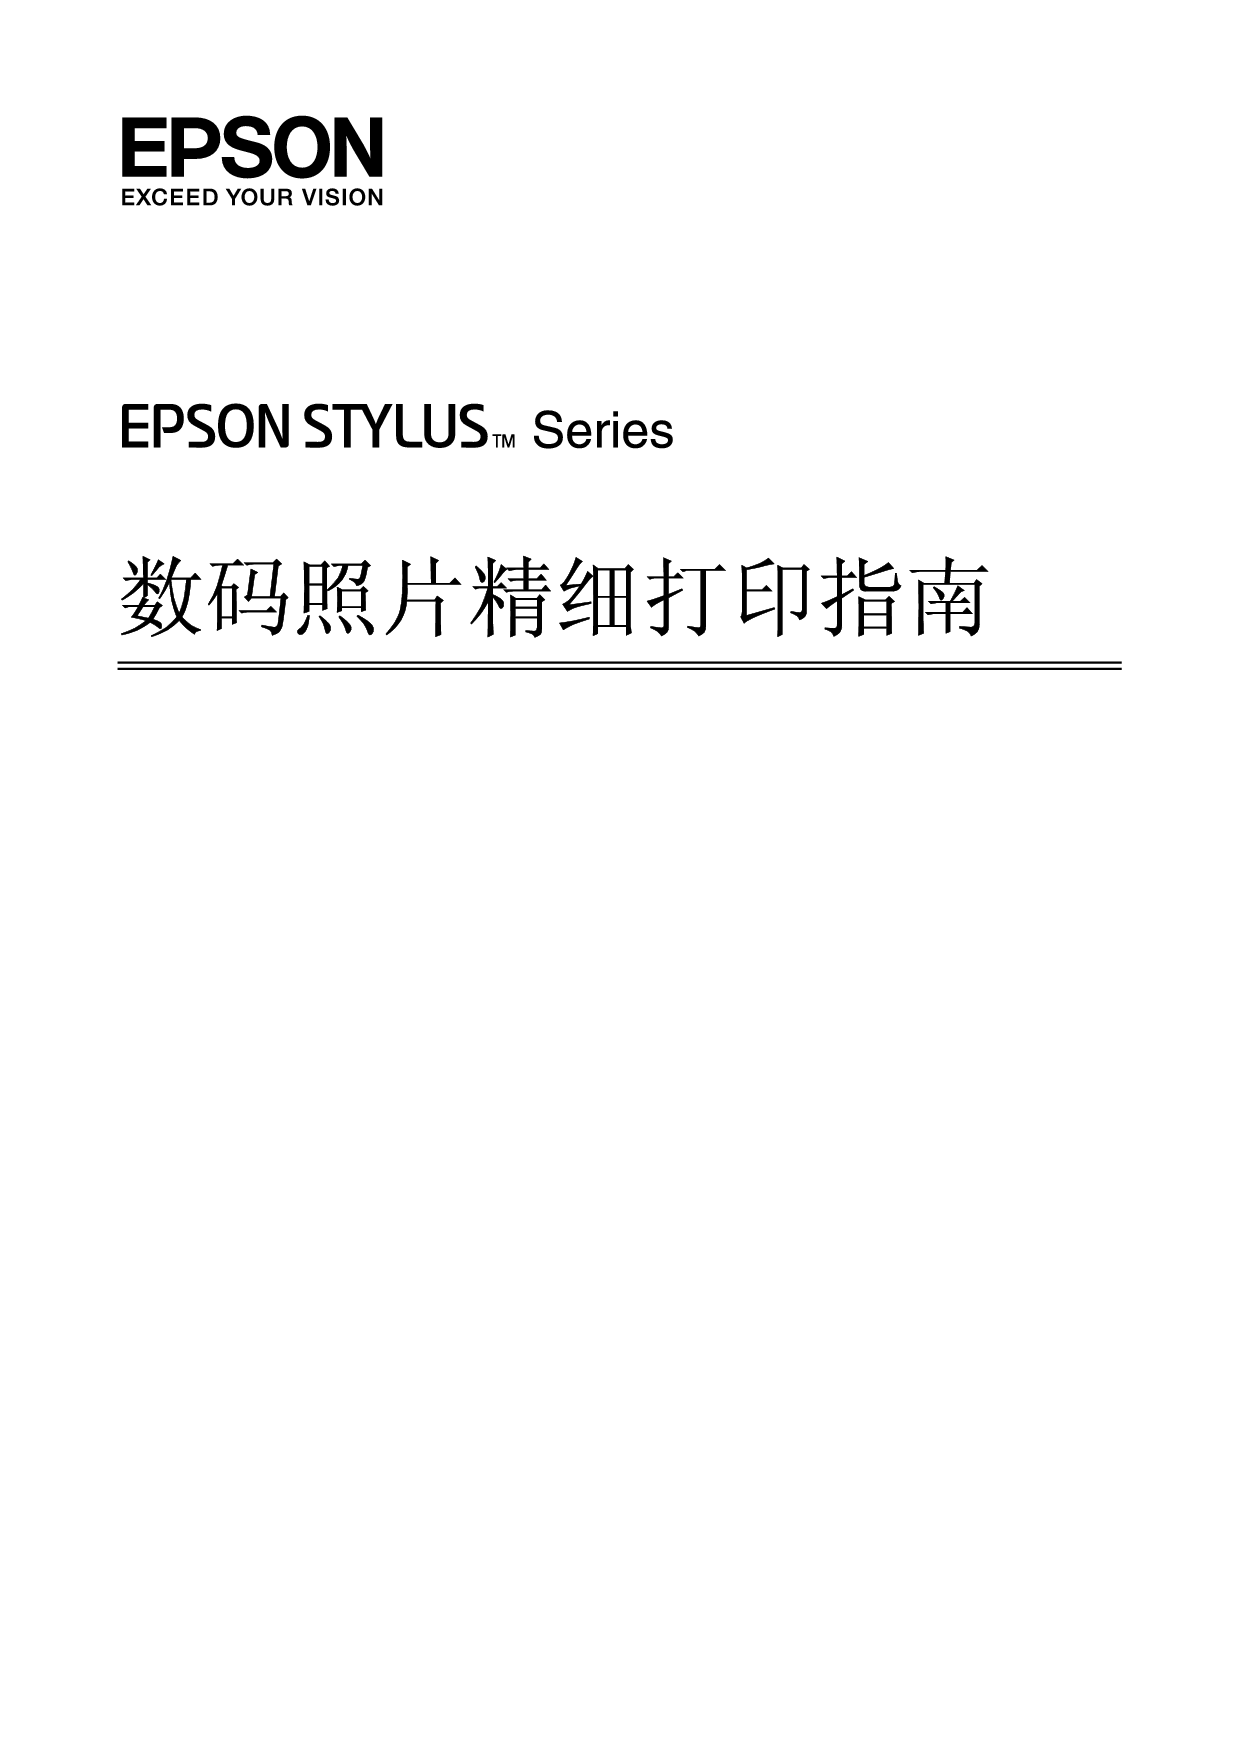 爱普生 Epson STYLUS 精细打印 用户指南 封面